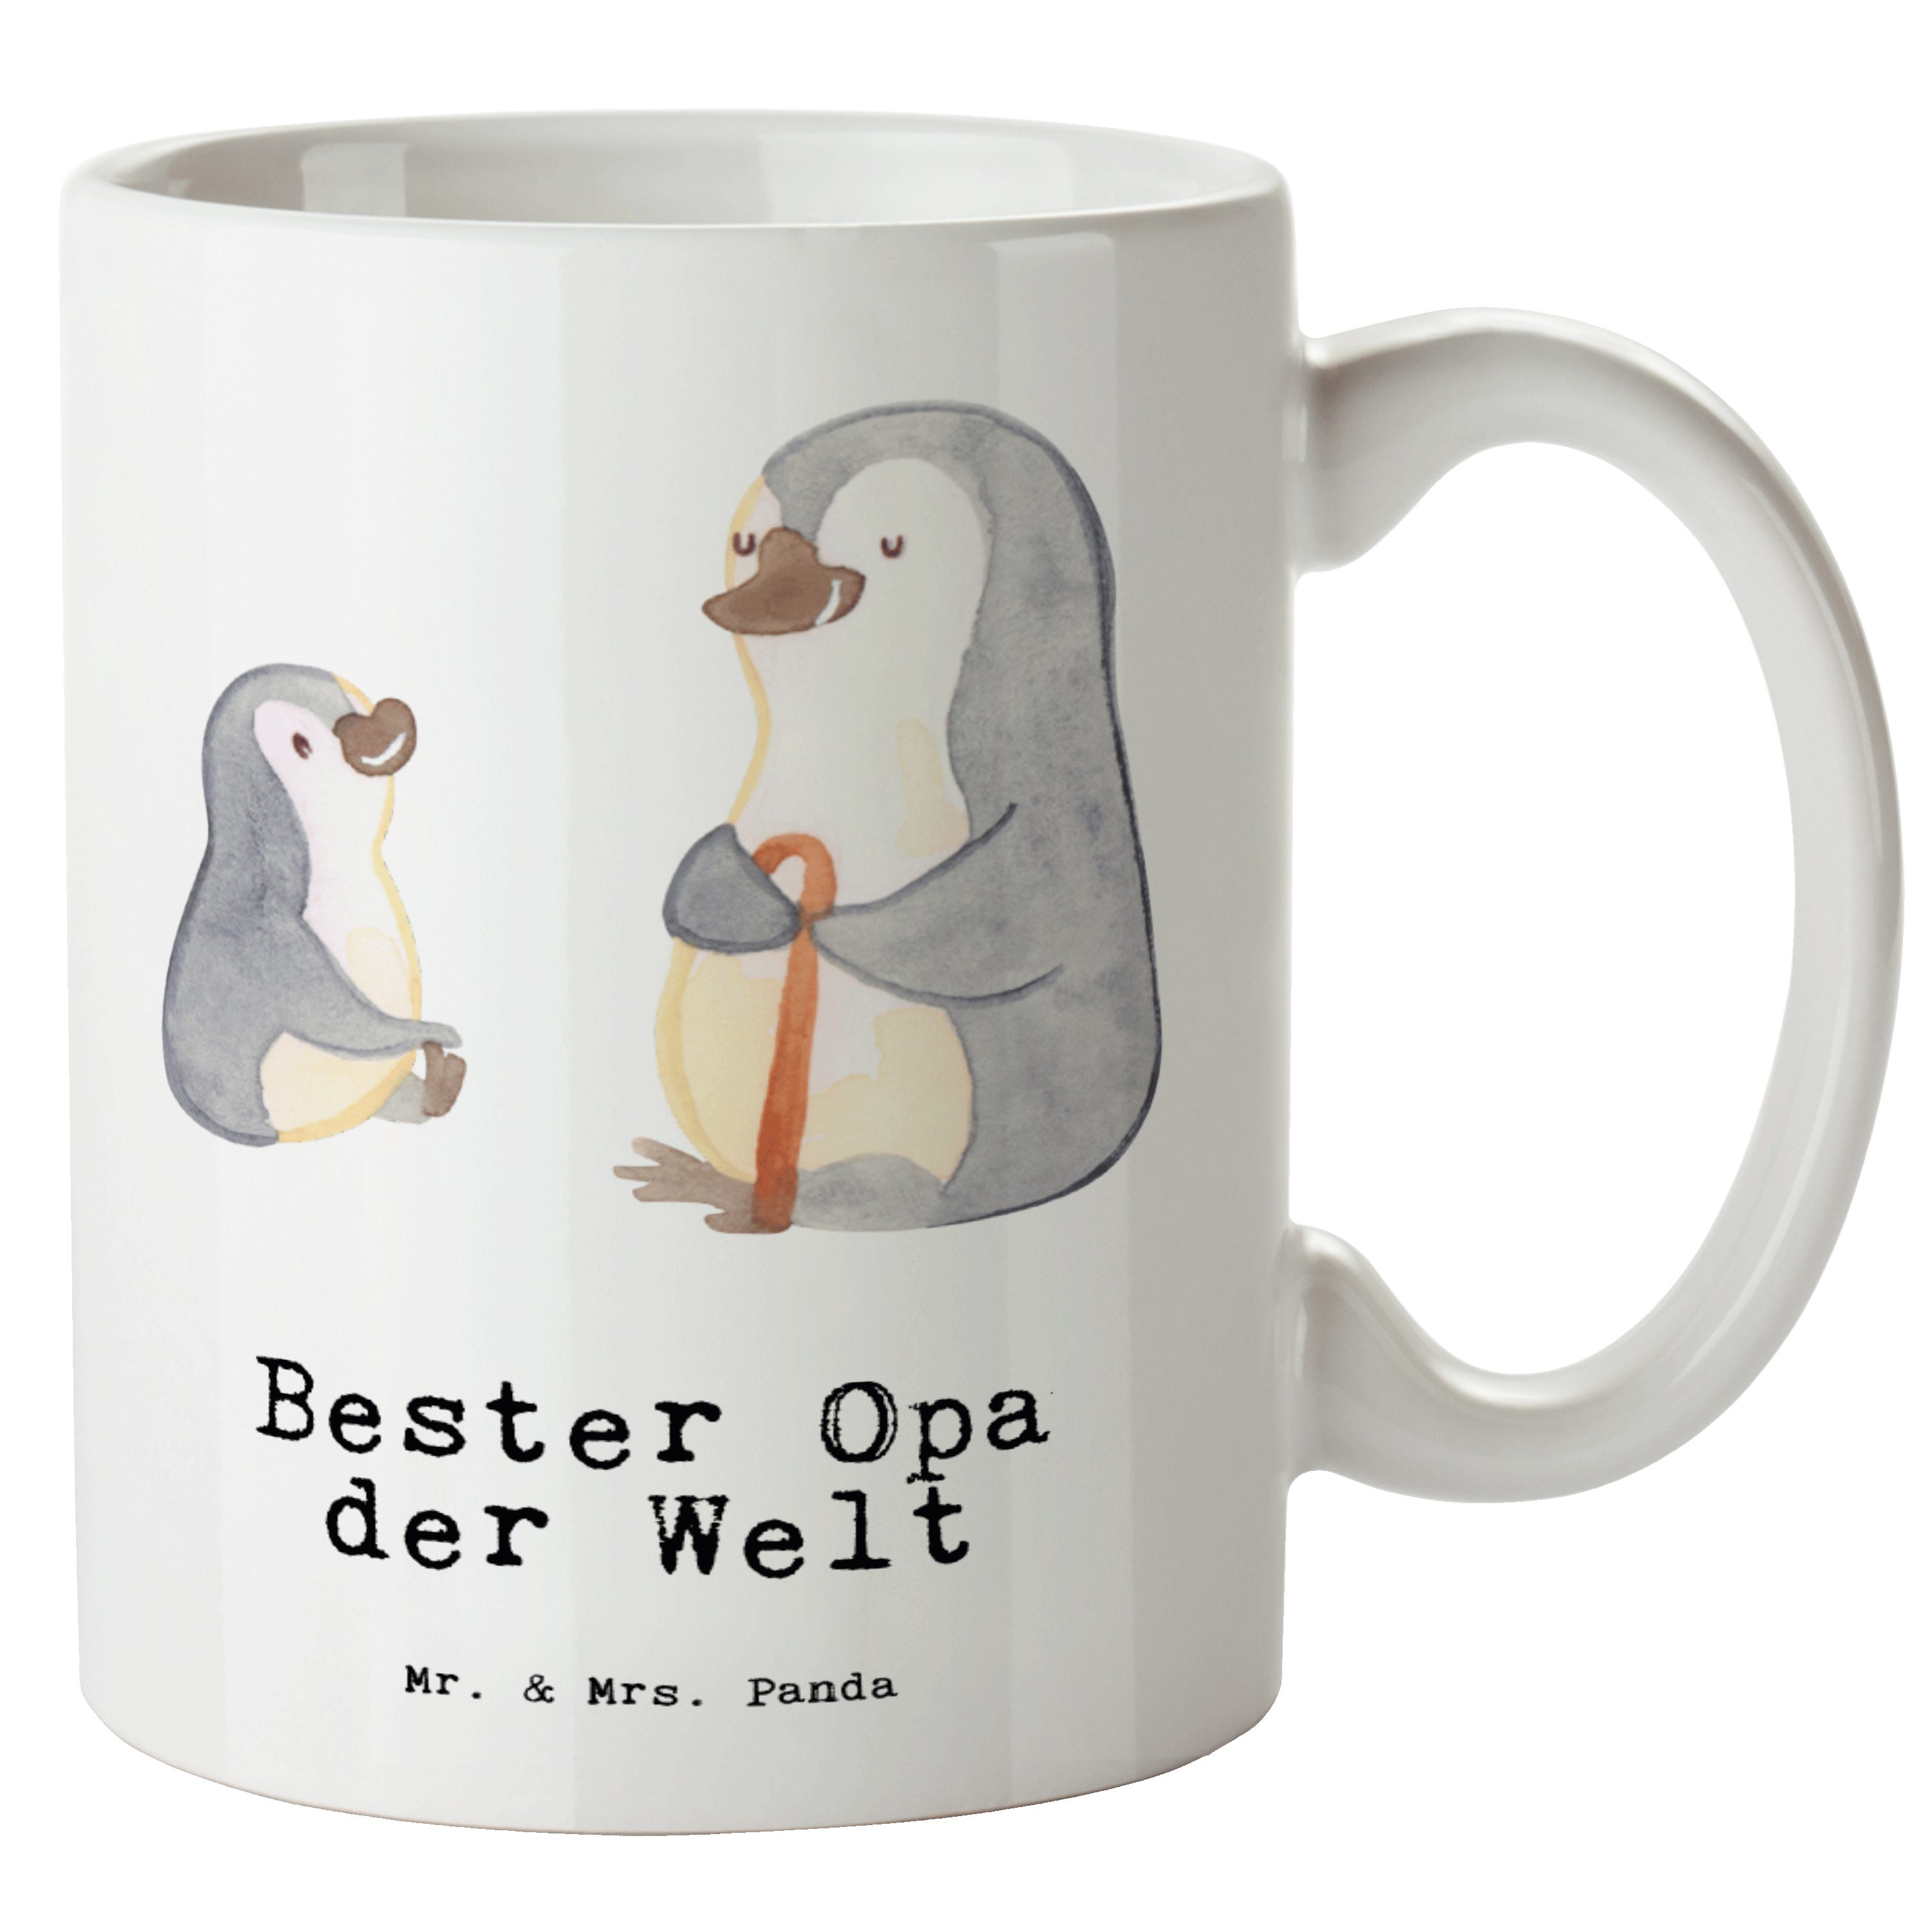 Mr. & Mrs. Panda Tasse Pinguin Bester Opa der Welt - Weiß - Geschenk, Enkel, Dankeschön, Jum, XL Tasse Keramik